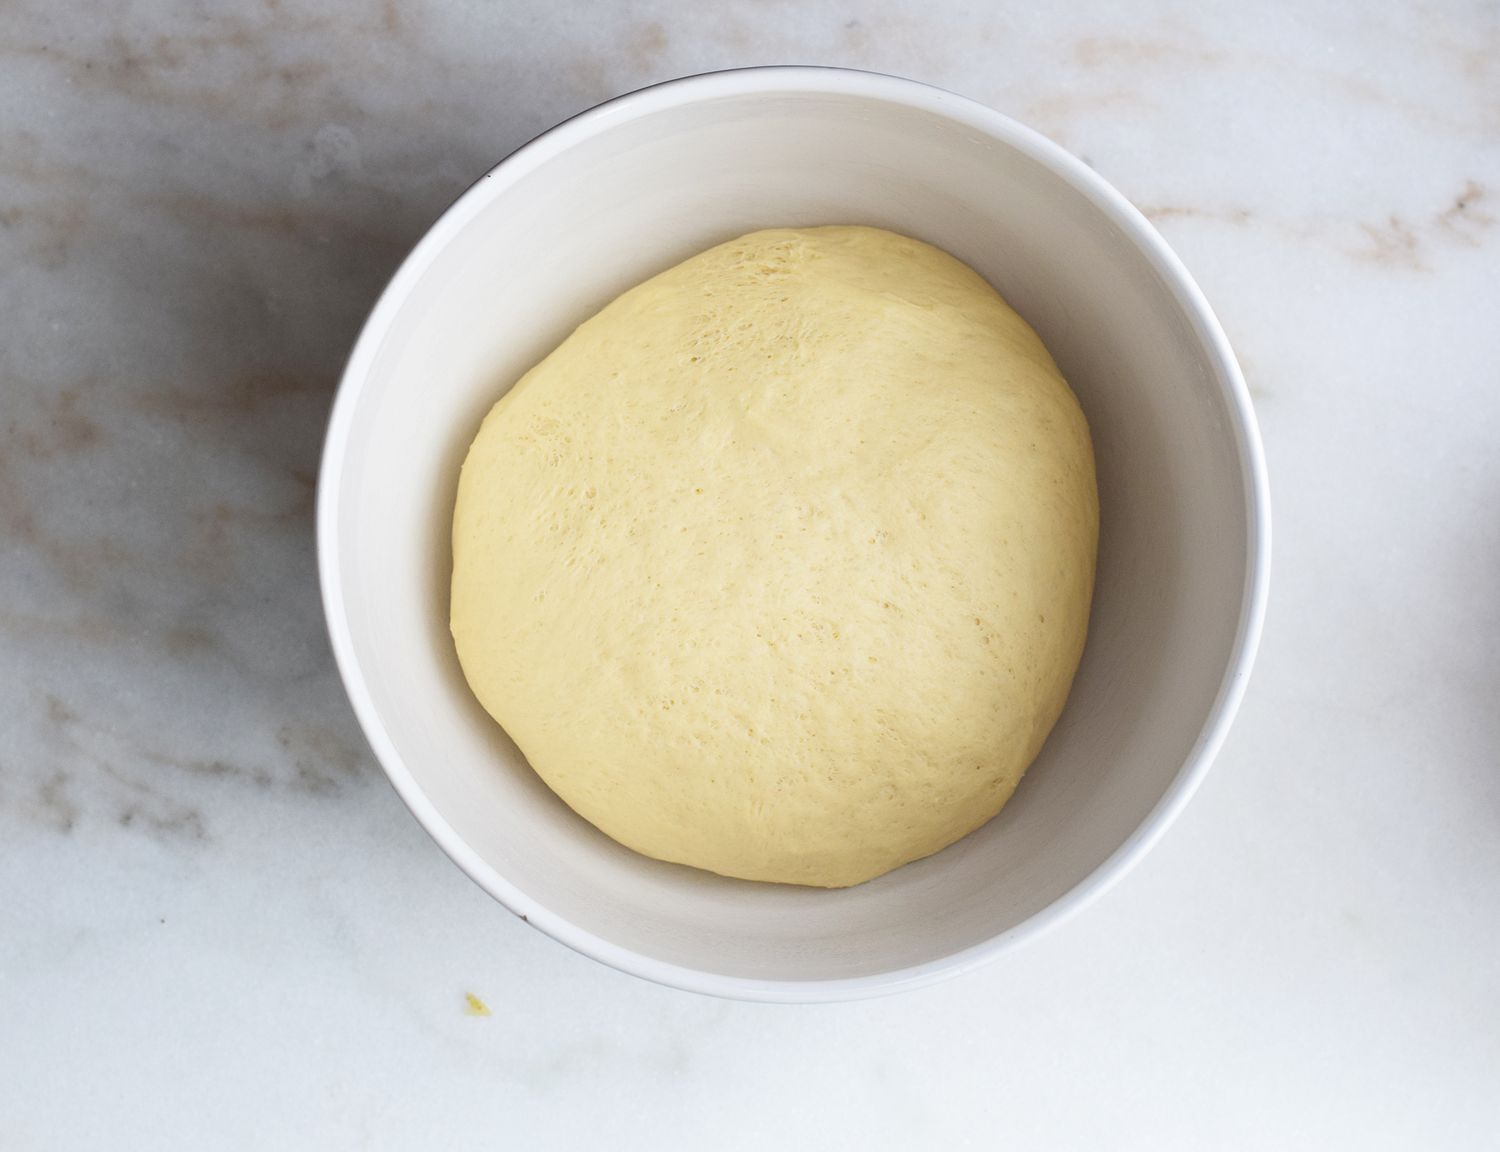 bierock dough risen in a large bowl